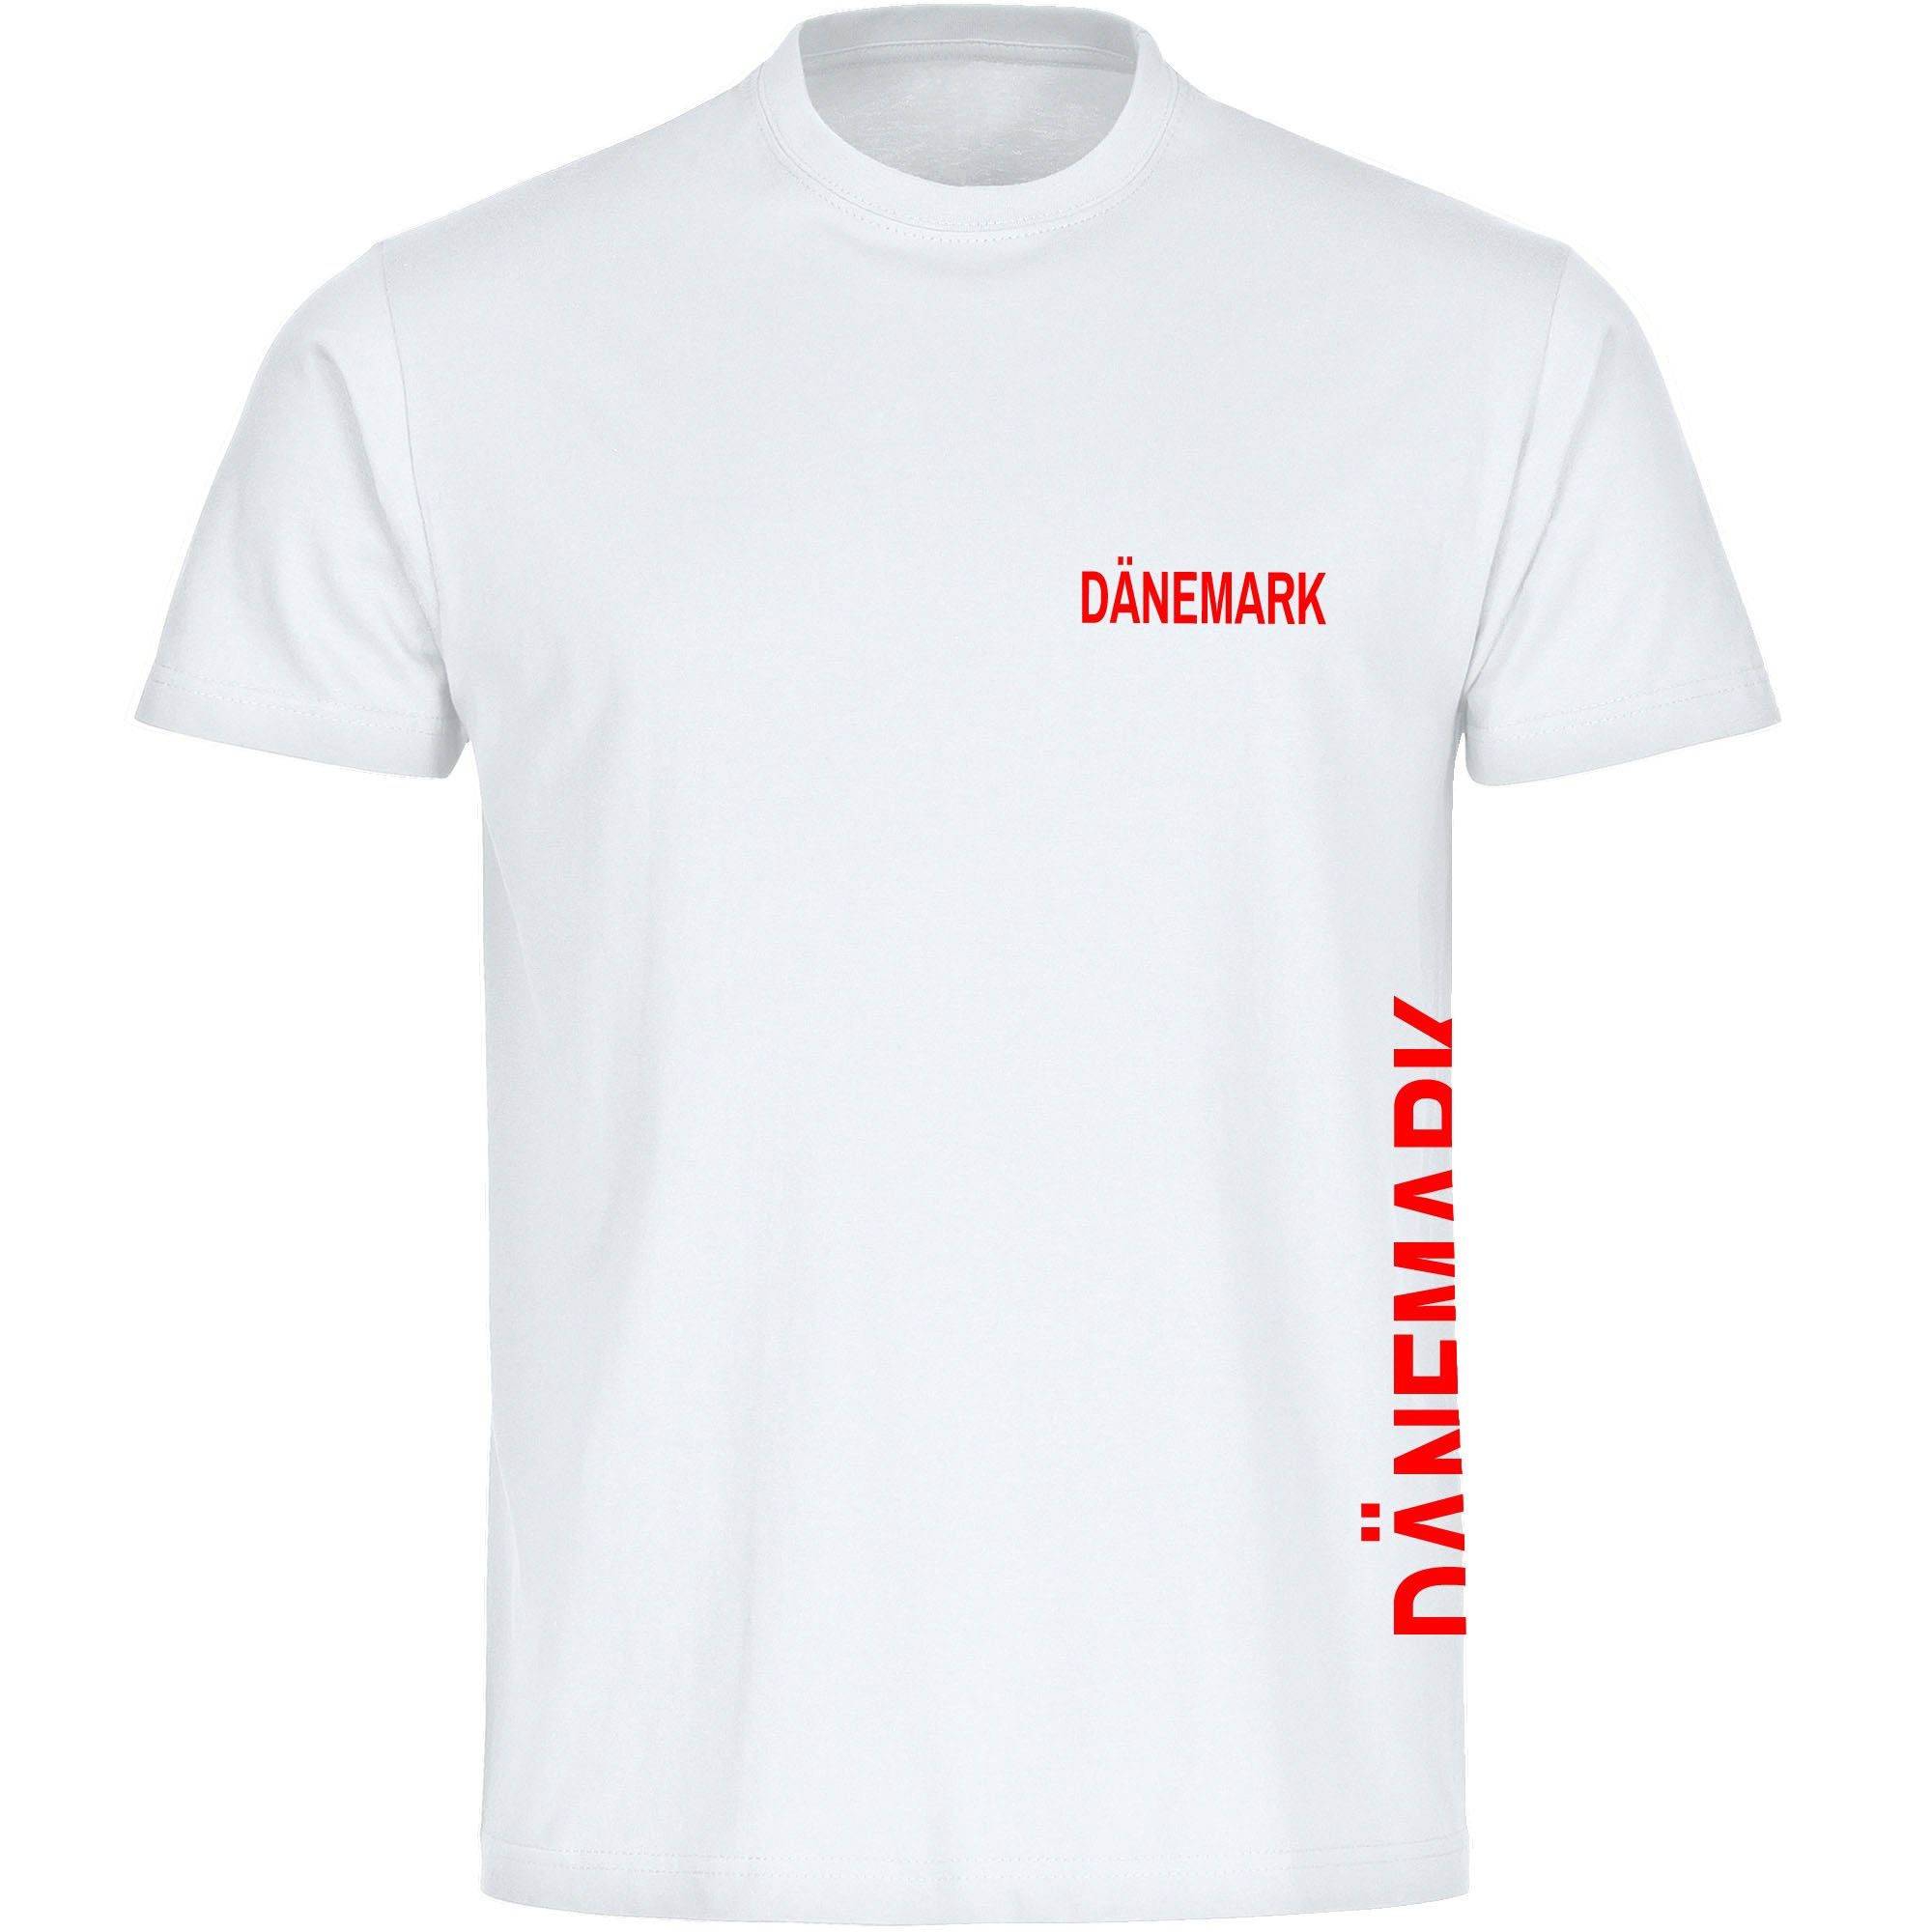 multifanshop T-Shirt Herren Dänemark - Brust & Seite - Männer